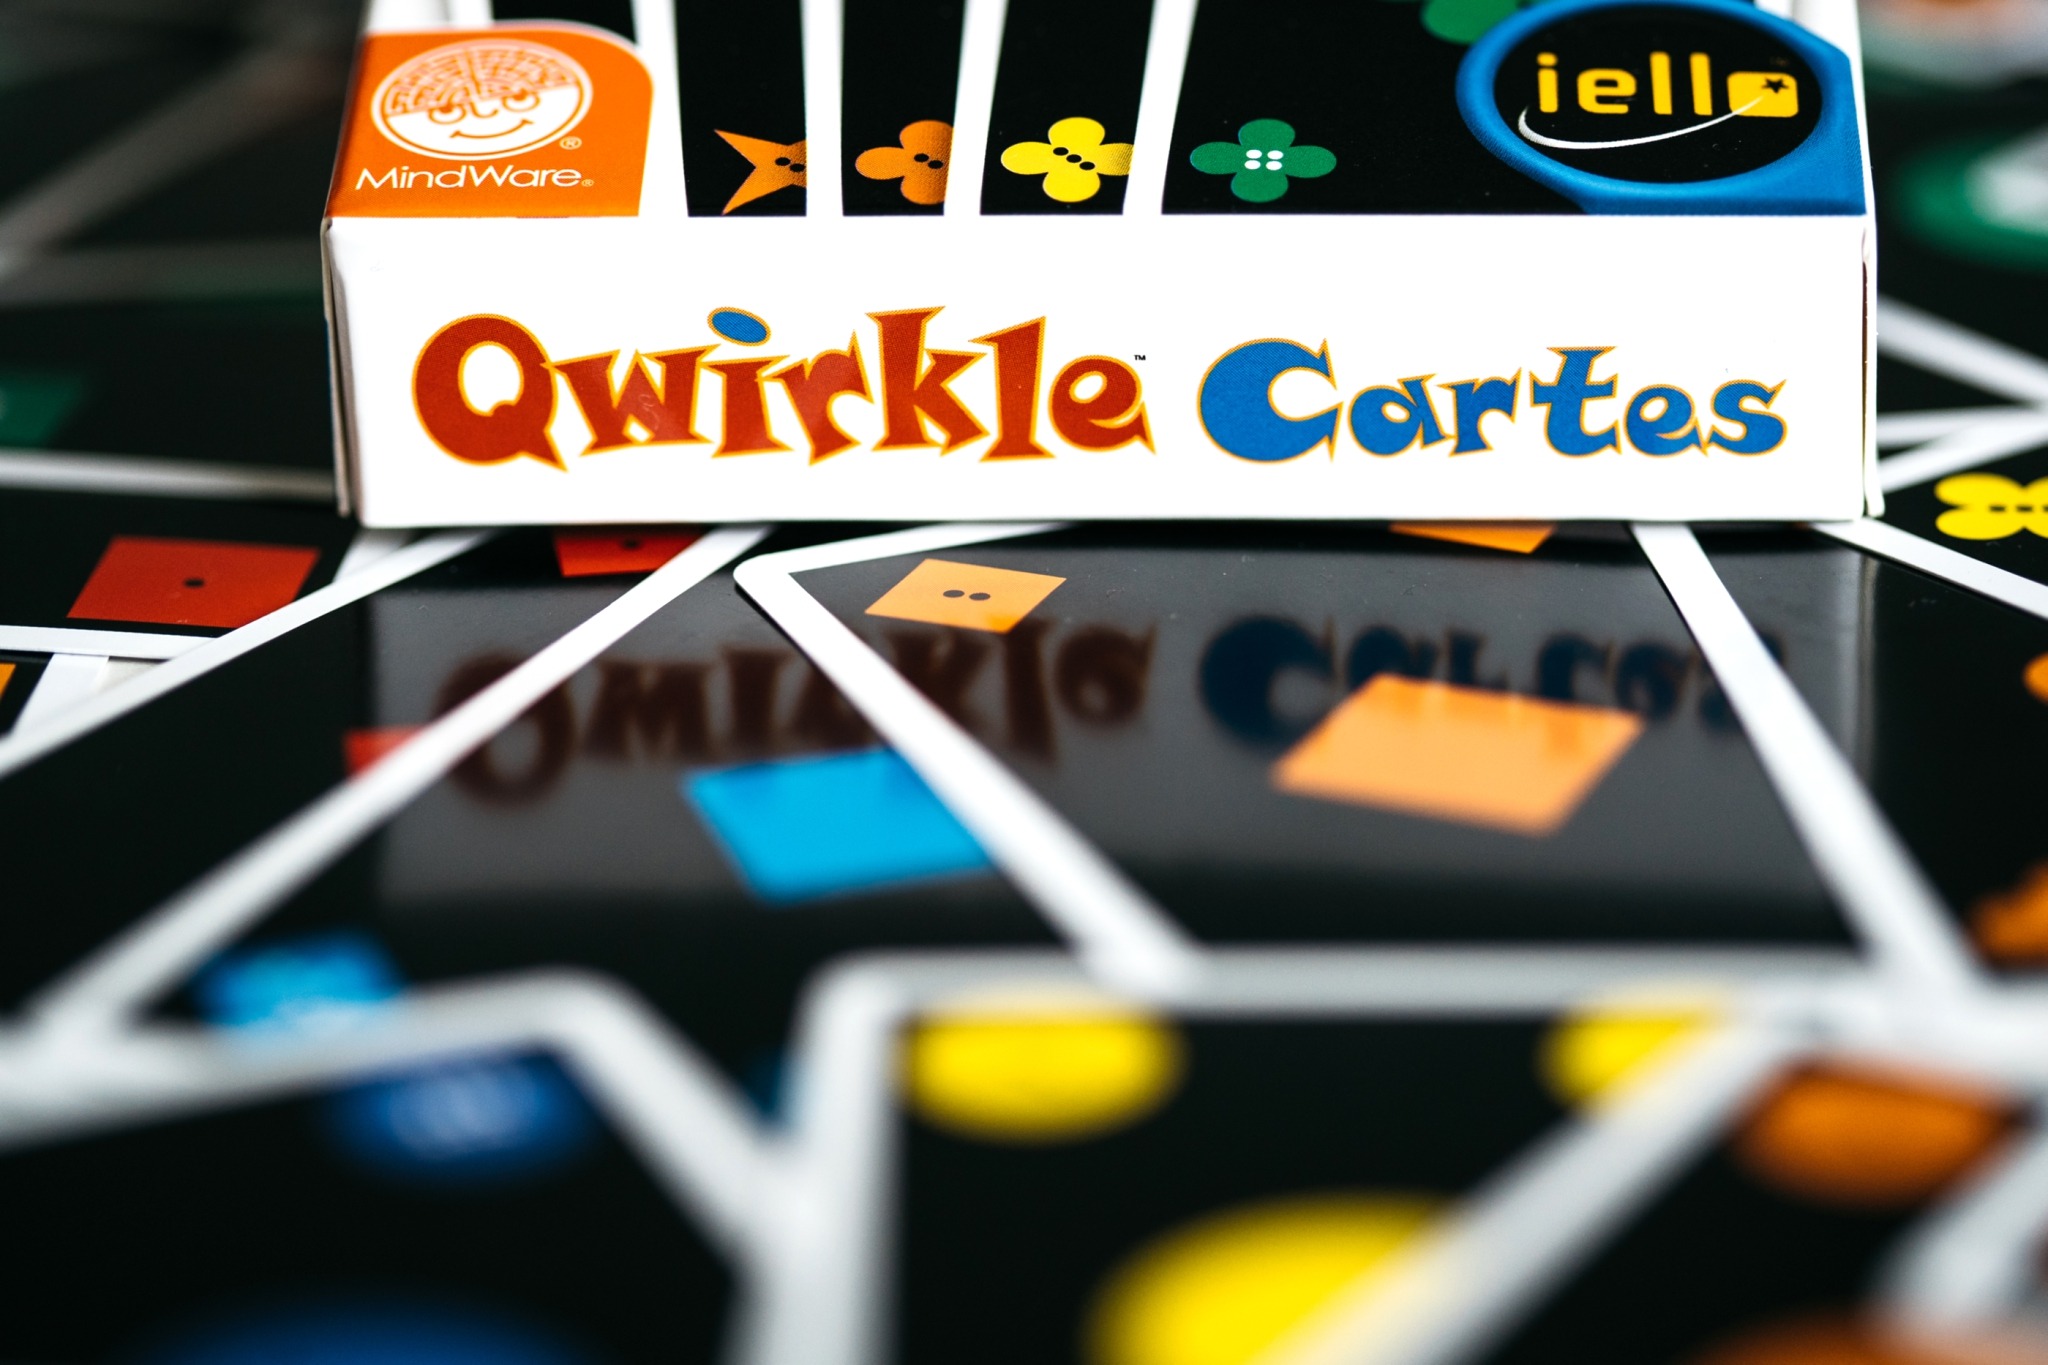 Qwirkle cartes iello jeu de société 